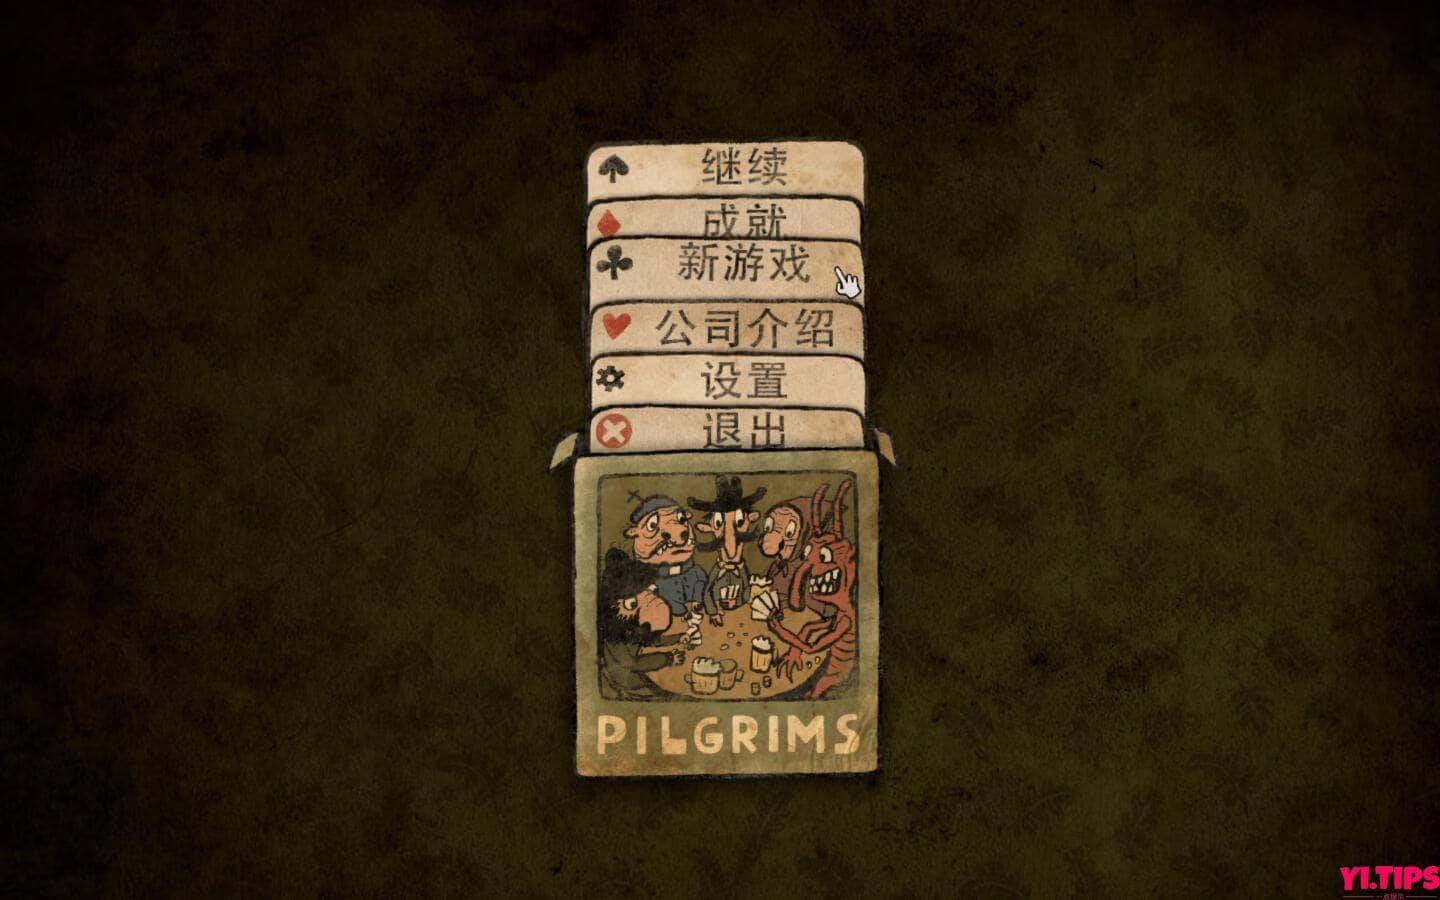 朝圣者 破解版免费下载 Pilgrims For Mac Mac游戏 中文原生版 - Yi.Tips[V1.0.11]-Yi.Tips